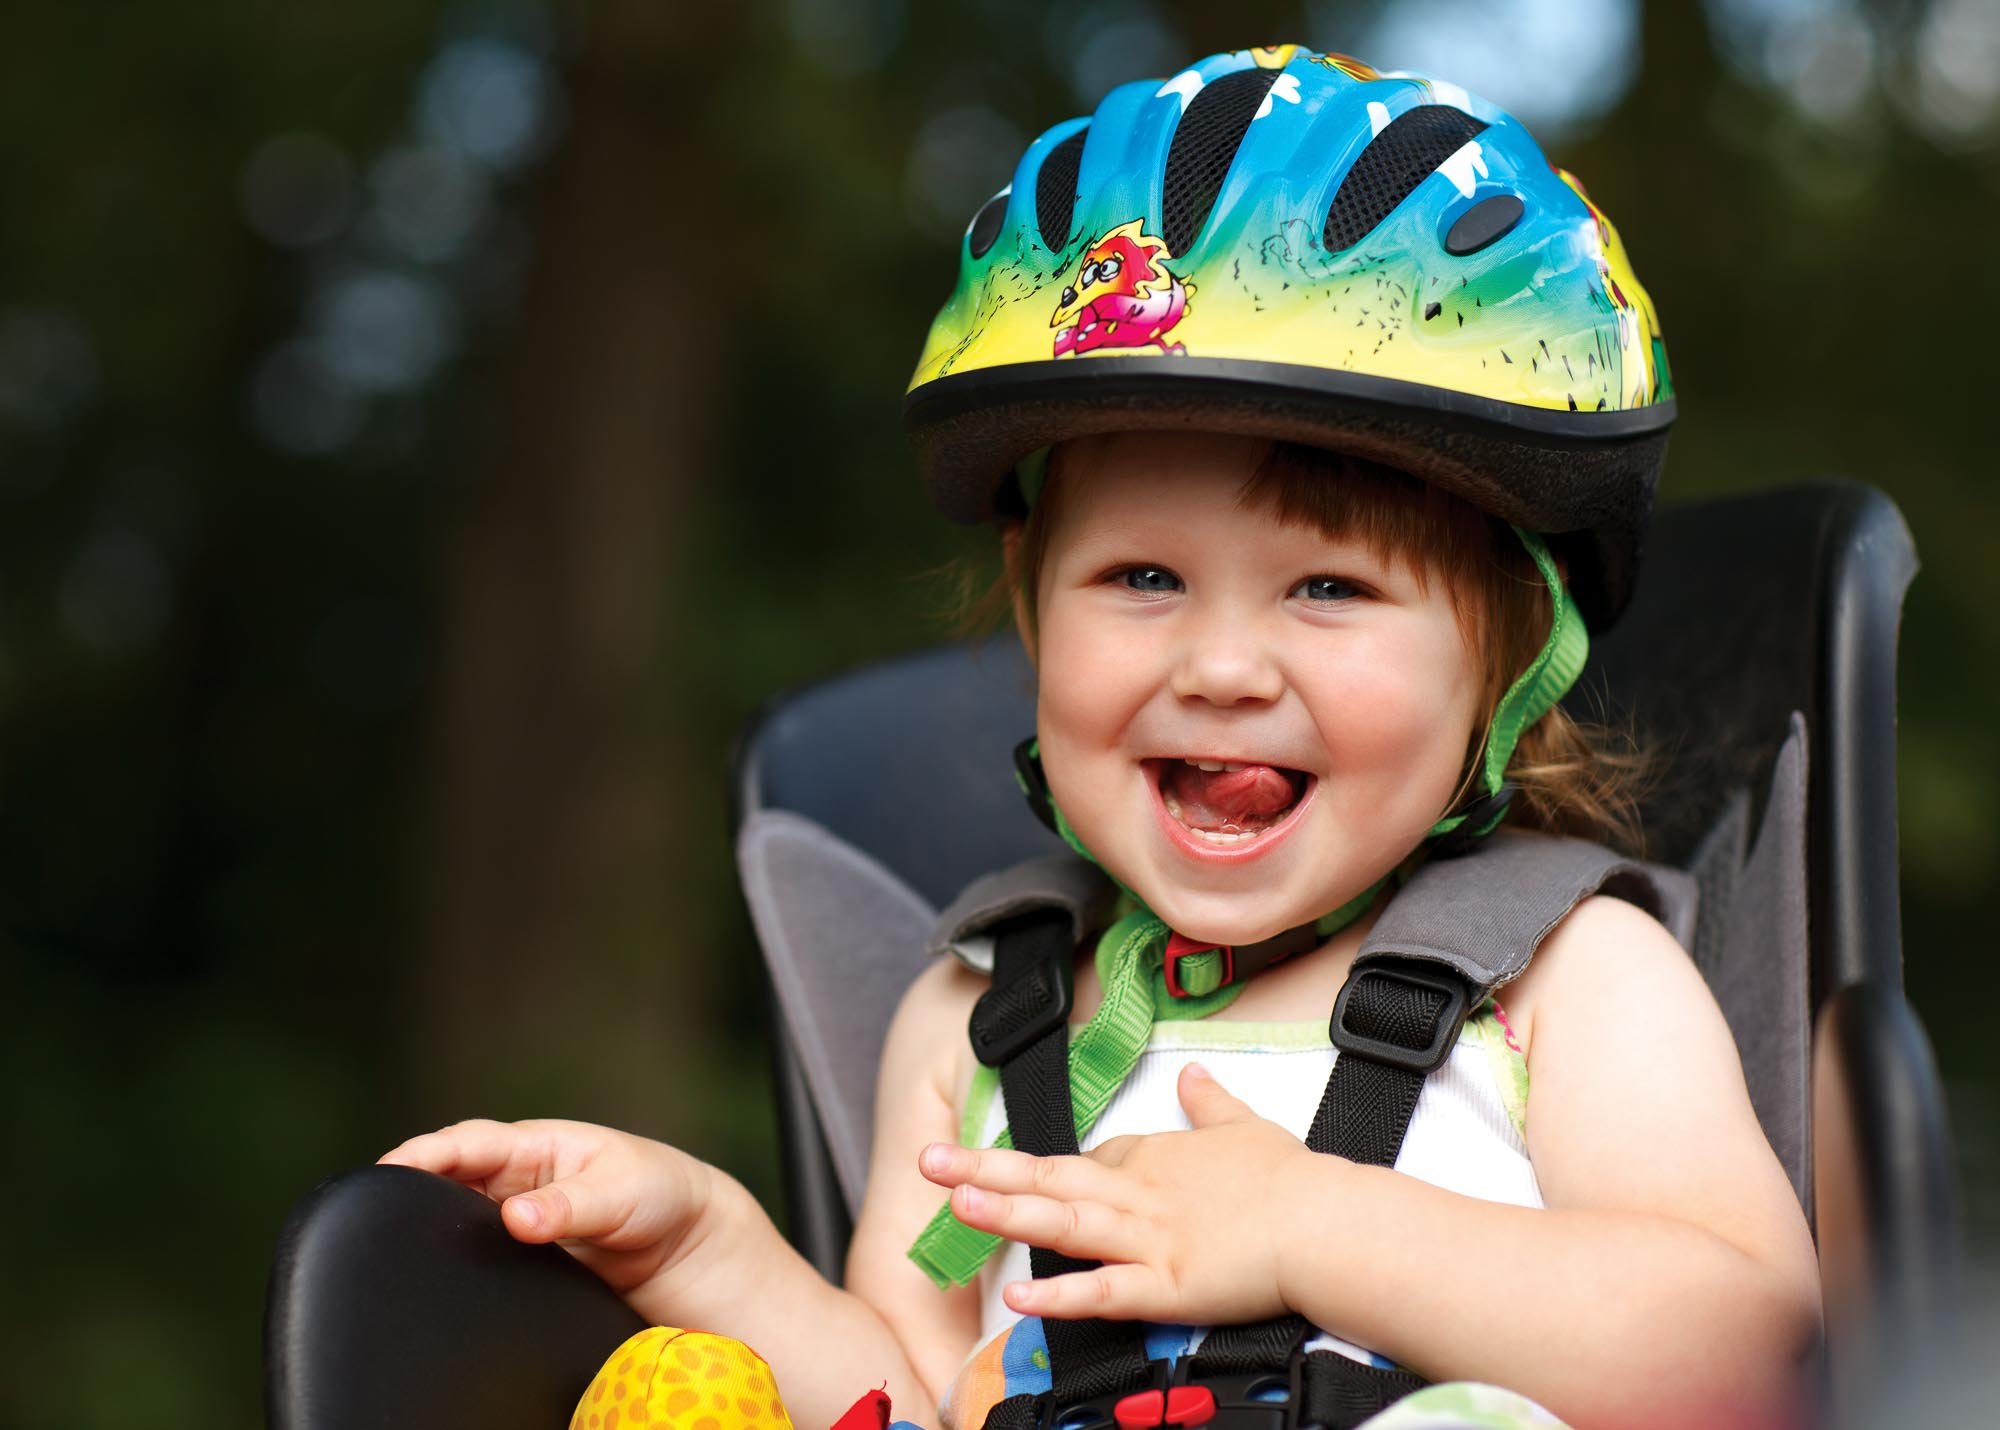 Une petite fille souriante dans un siège de vélo avec un casque